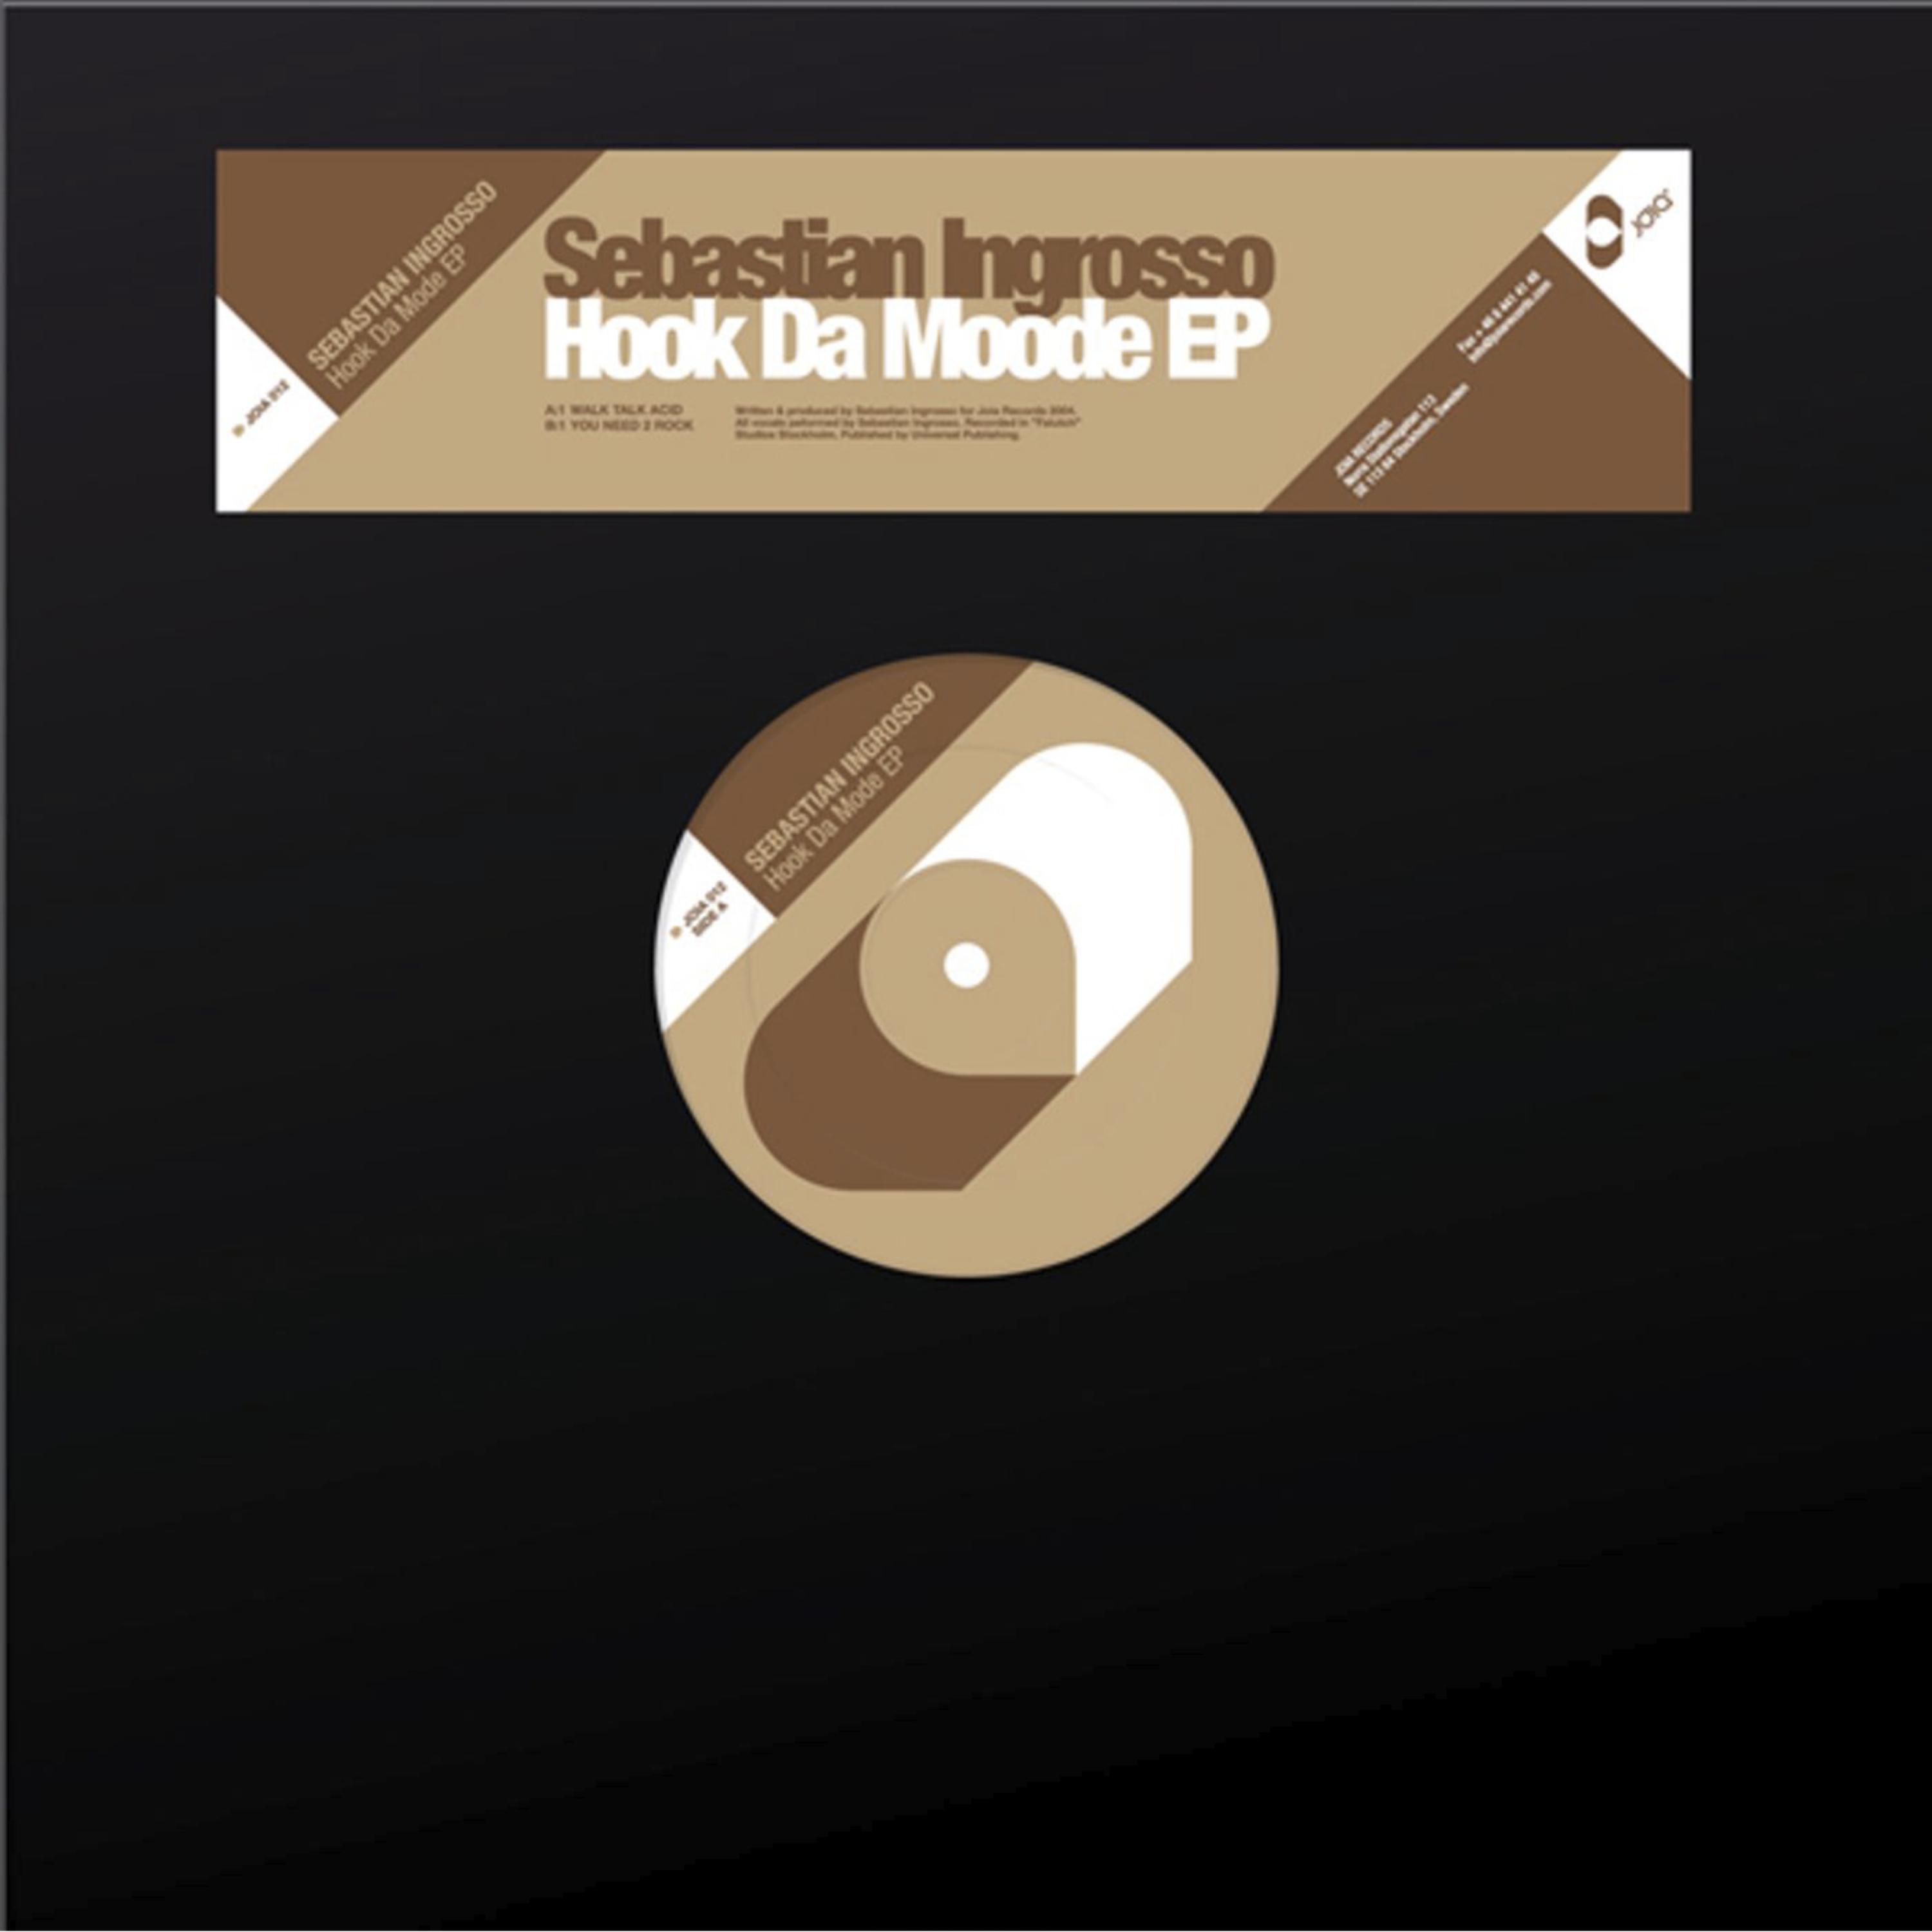 Hock Da Mode EP